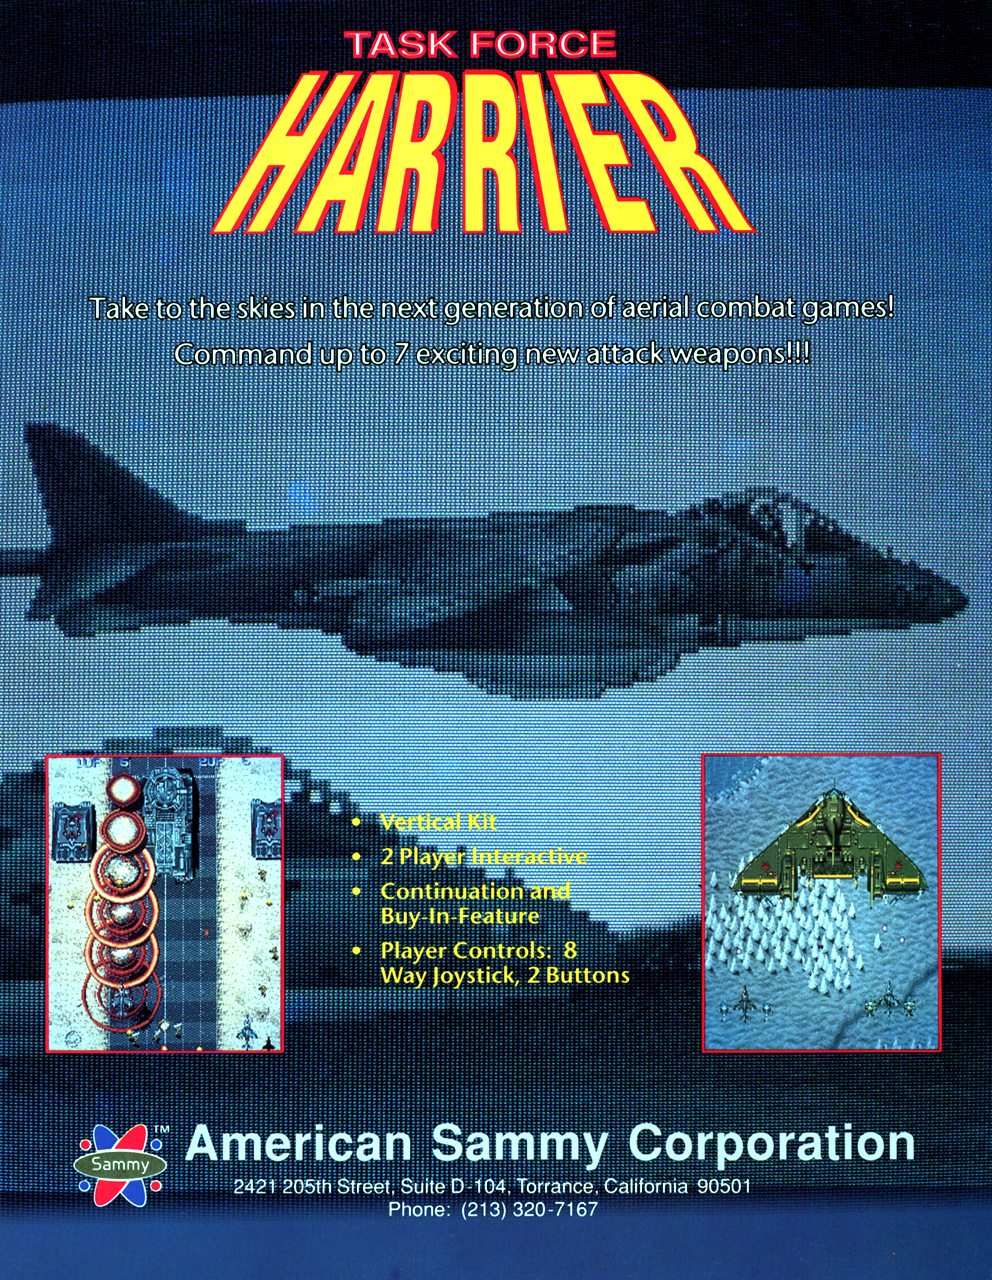 Image of Task Force Harrier